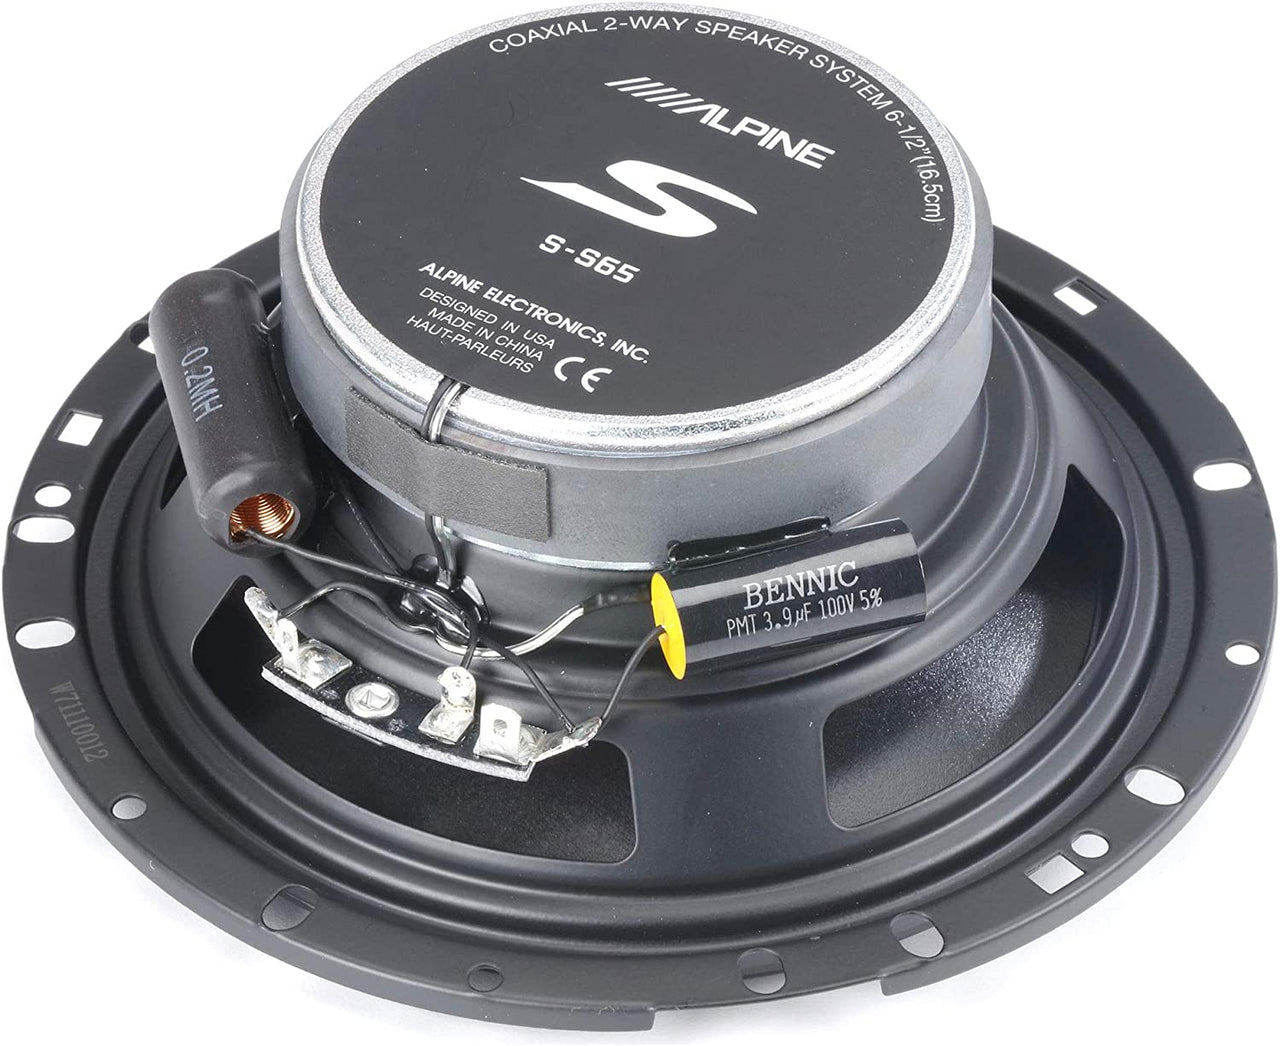 2 Pair Alpine S-S65 Car Audio Type S Series 6 1/2" 320 Watt Speakers + 20' Speaker Wire Package